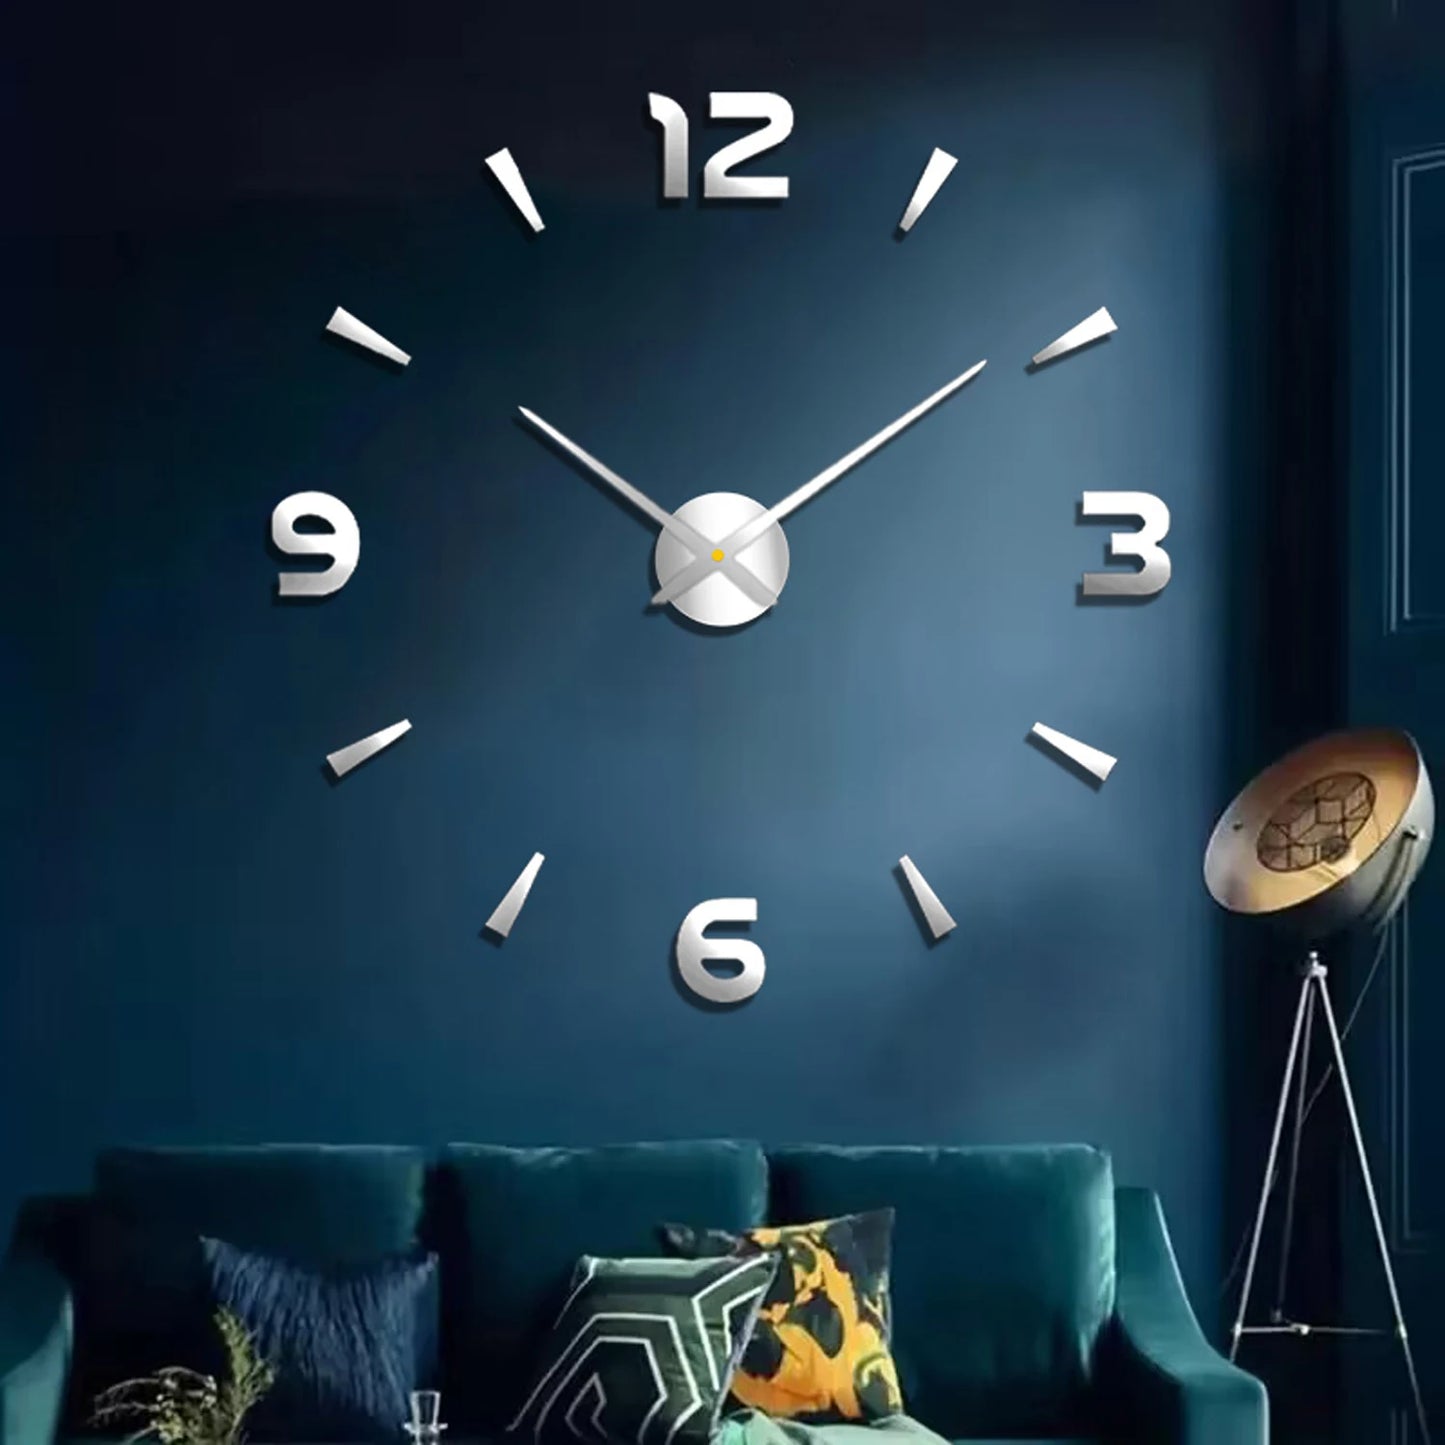 3D Diy Frameless Large Wall Clock For Living Room Decor